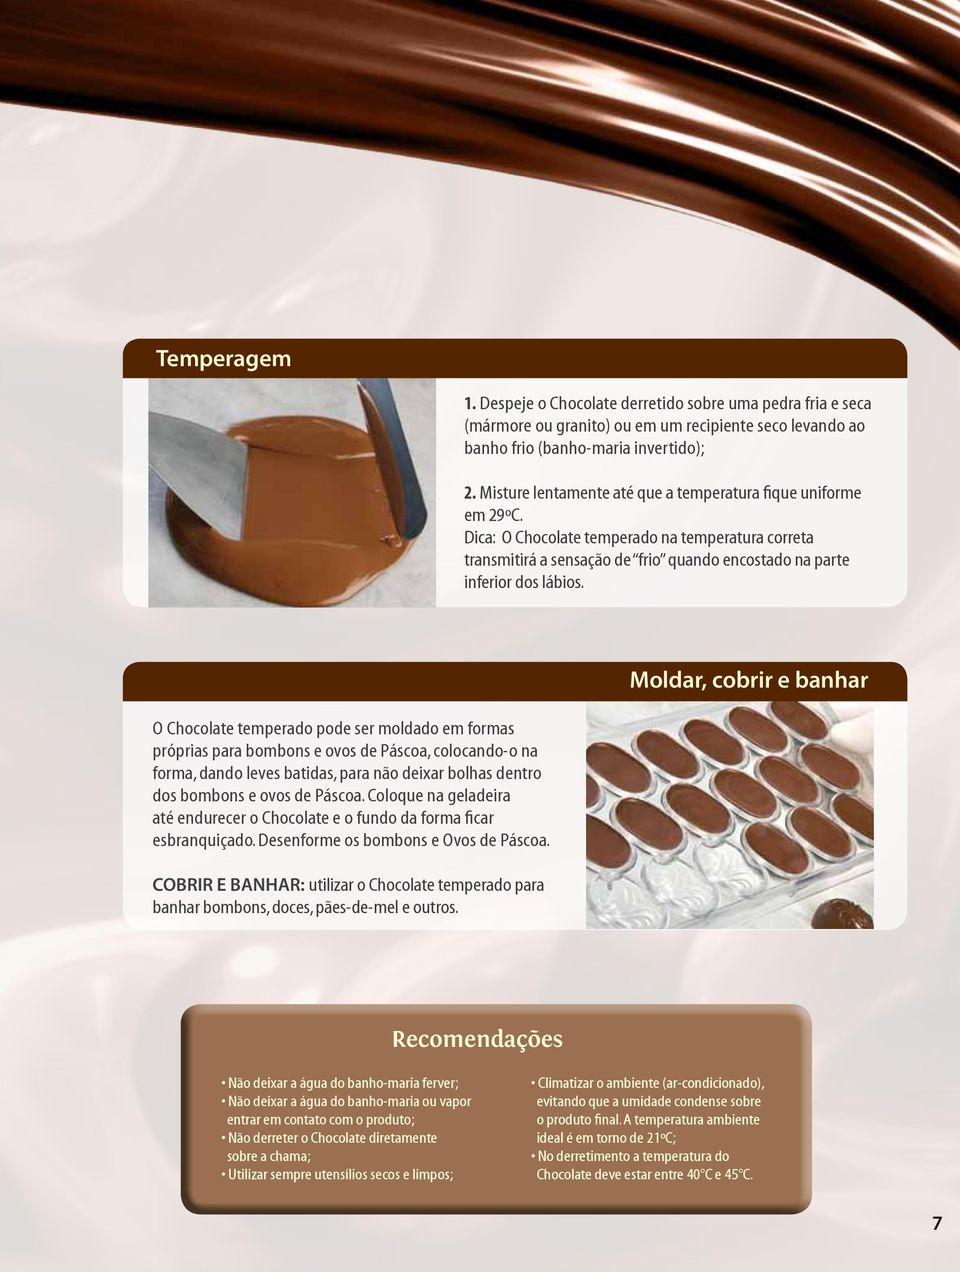 O Chocolate temperado pode ser moldado em formas próprias para bombons e ovos de Páscoa, colocando-o na forma, dando leves batidas, para não deixar bolhas dentro dos bombons e ovos de Páscoa.